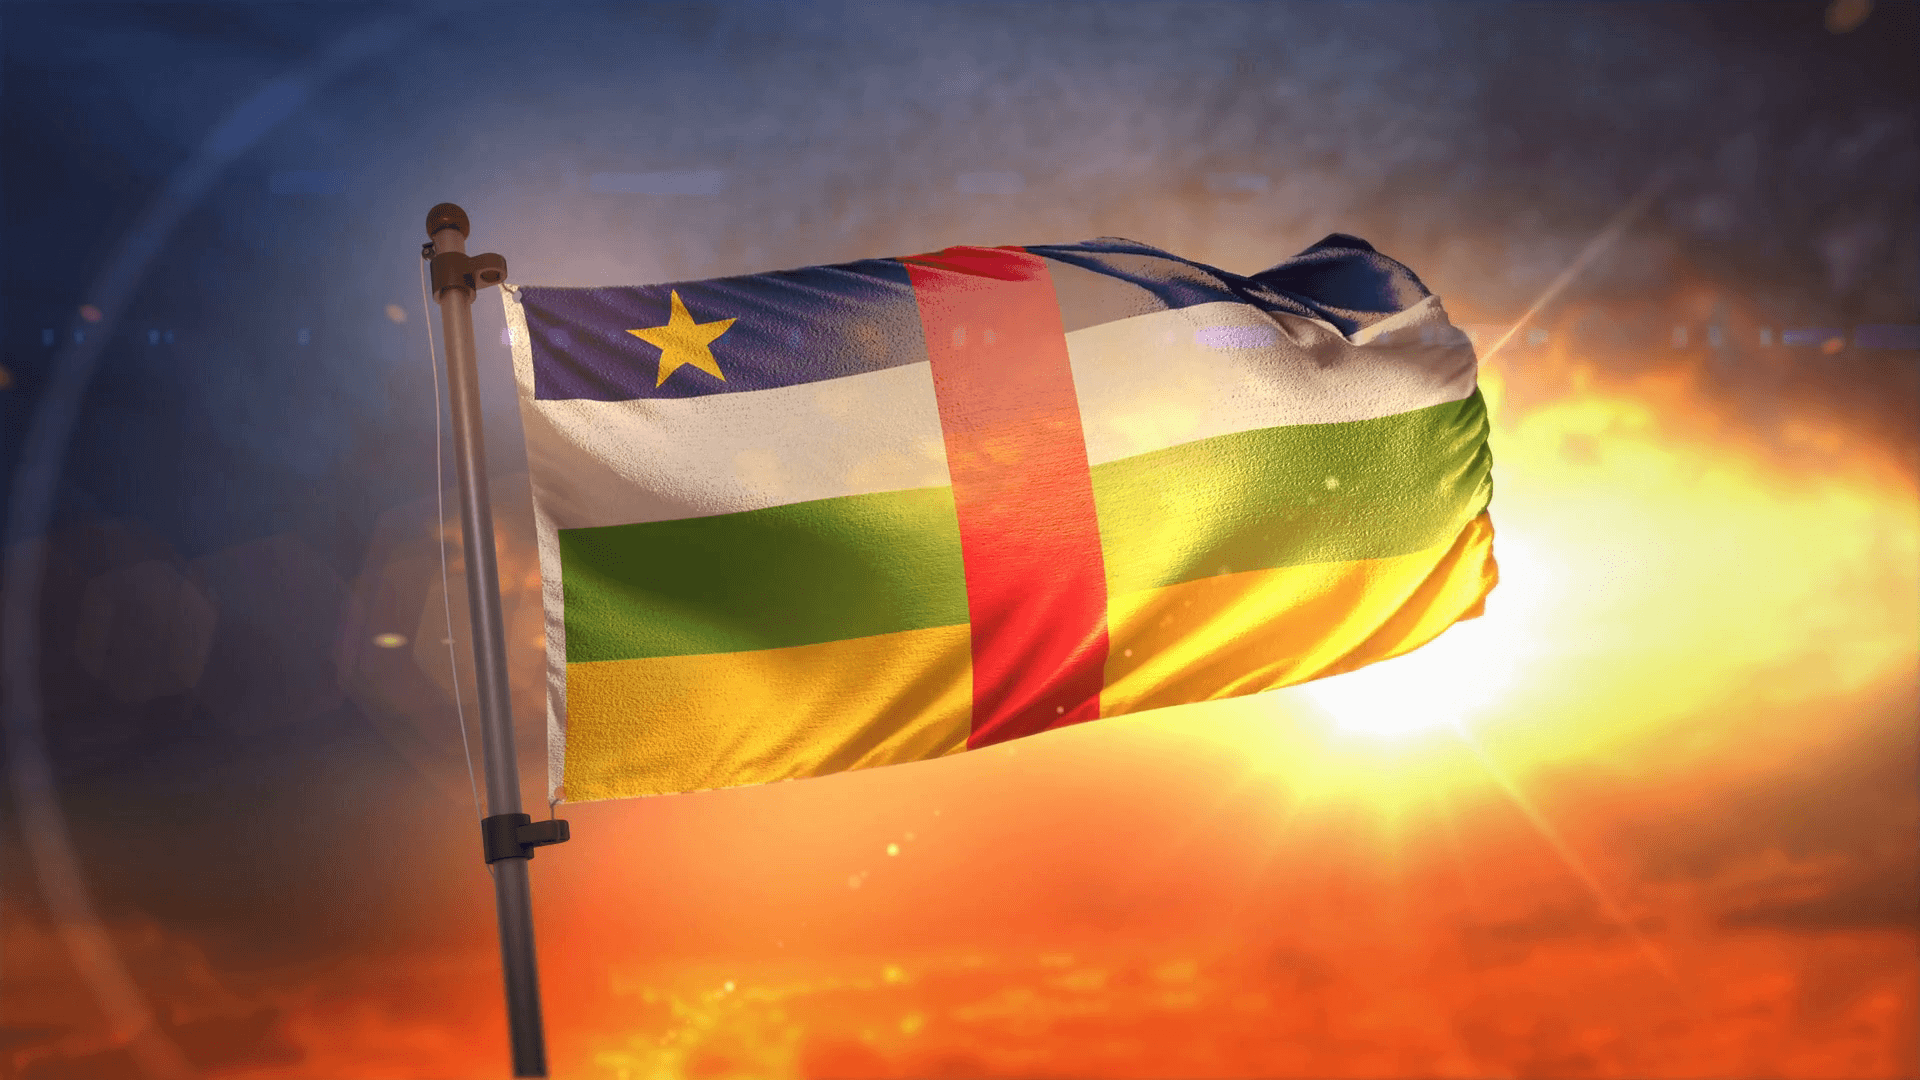 پرچم جمهوری آفریقای مرکزی (Central African Republic Flag)